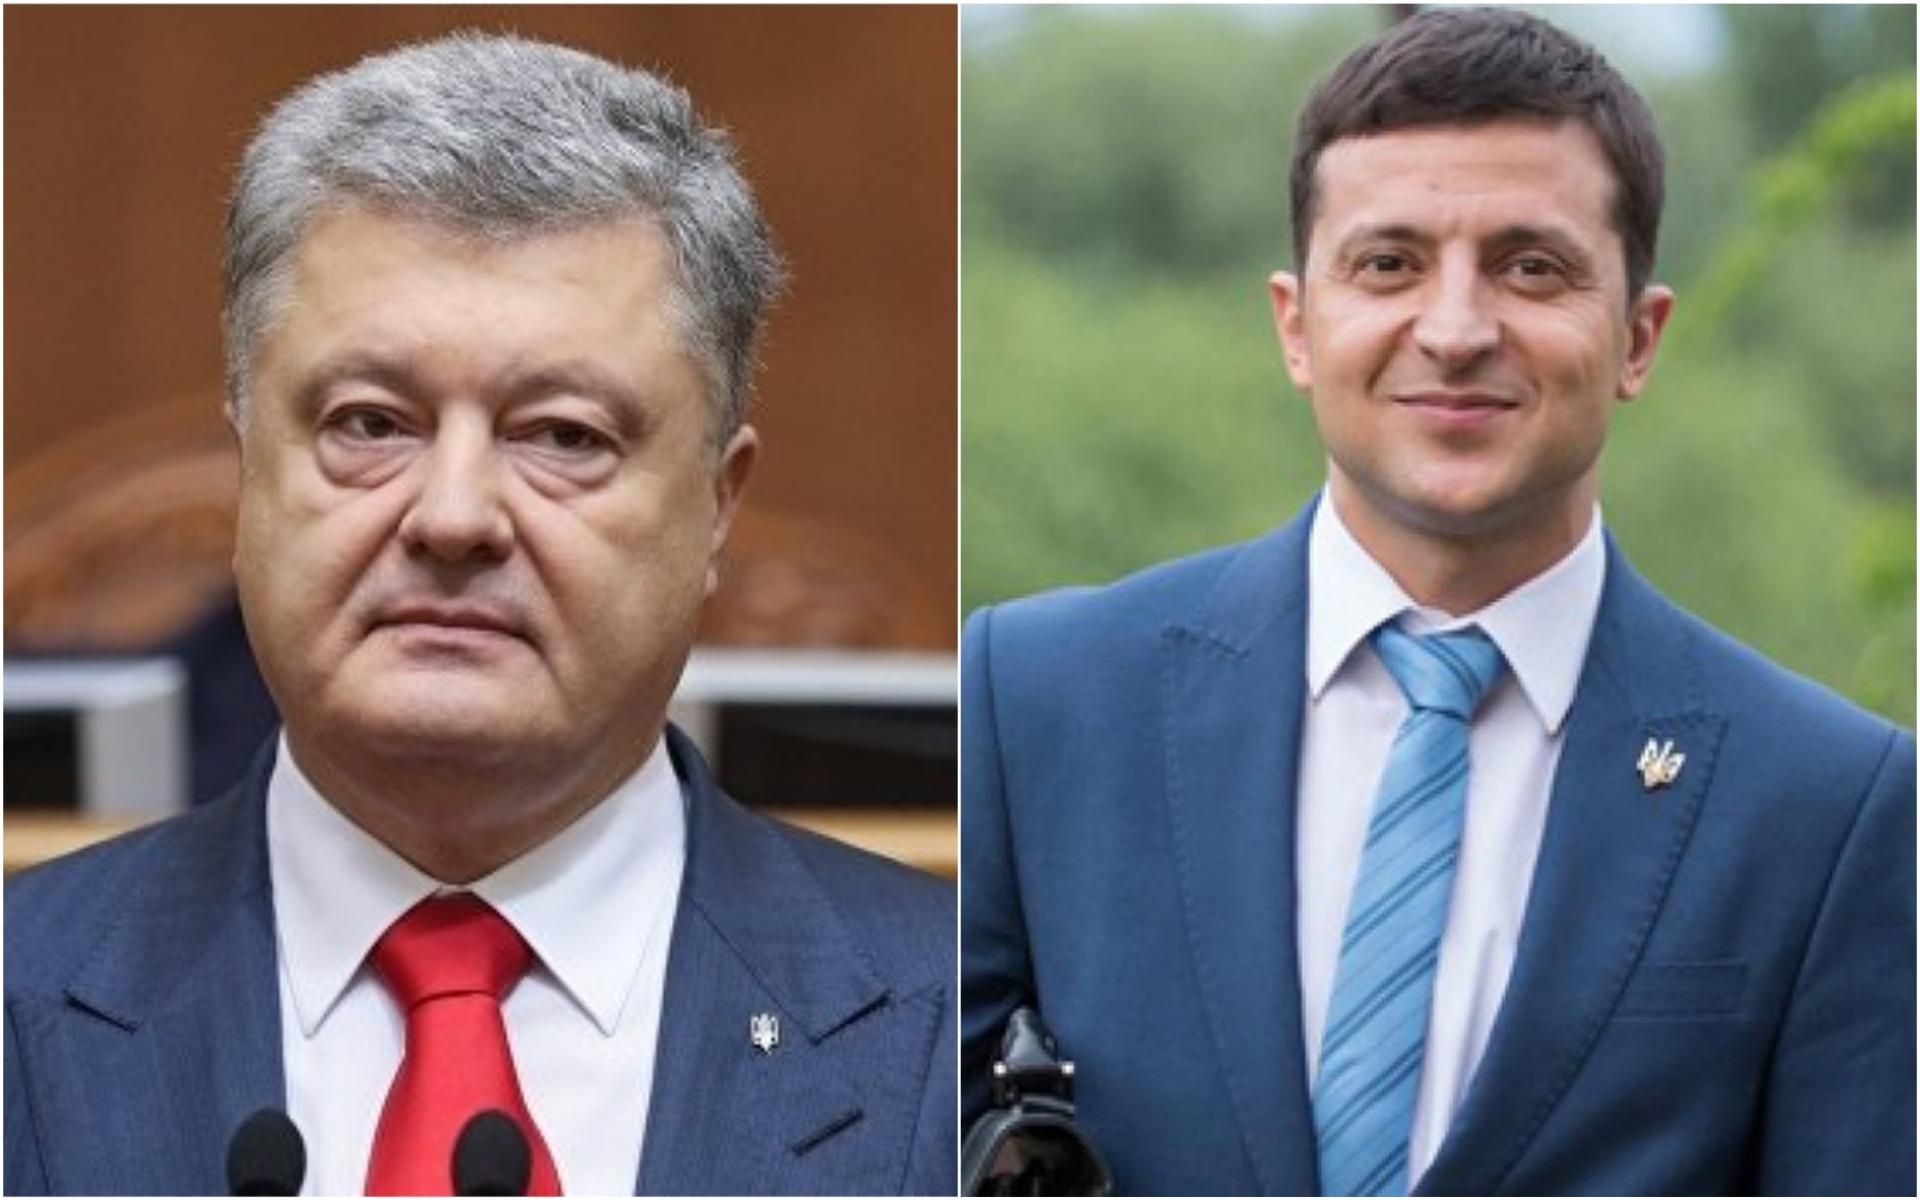 НСК "Олимпийский" назвал условия для проведения дебатов Порошенко и Зеленского